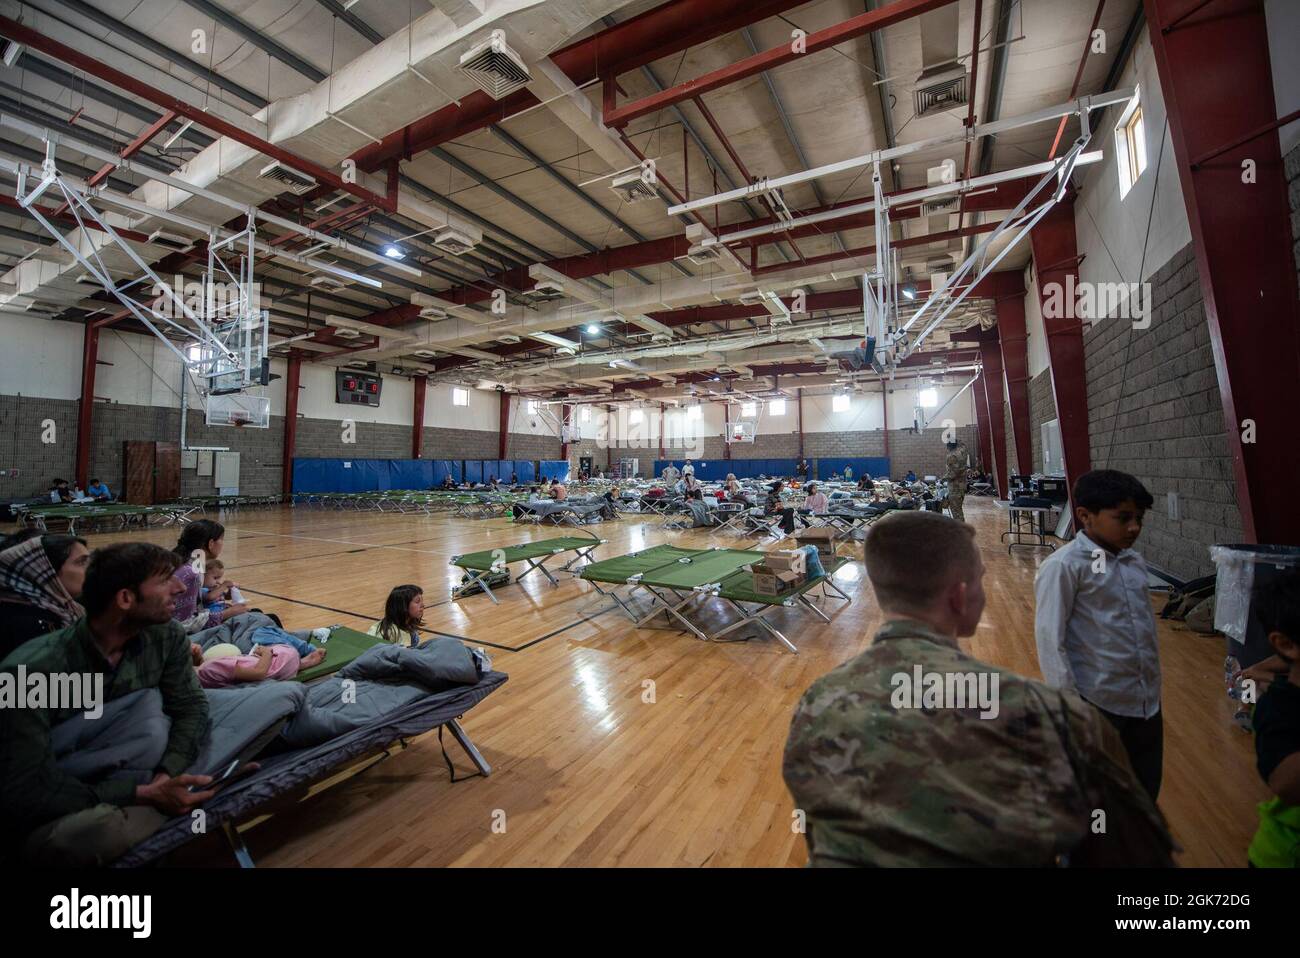 Les personnes évacuées qualifiées se reposent dans un gymnase de la région du CENTCOM, le 20 août 2021. Dans le cadre de l'opération alliés refuge, les citoyens ont quitté l'aéroport international Hamid Karzaï de Kaboul, à bord de plusieurs avions militaires. Banque D'Images